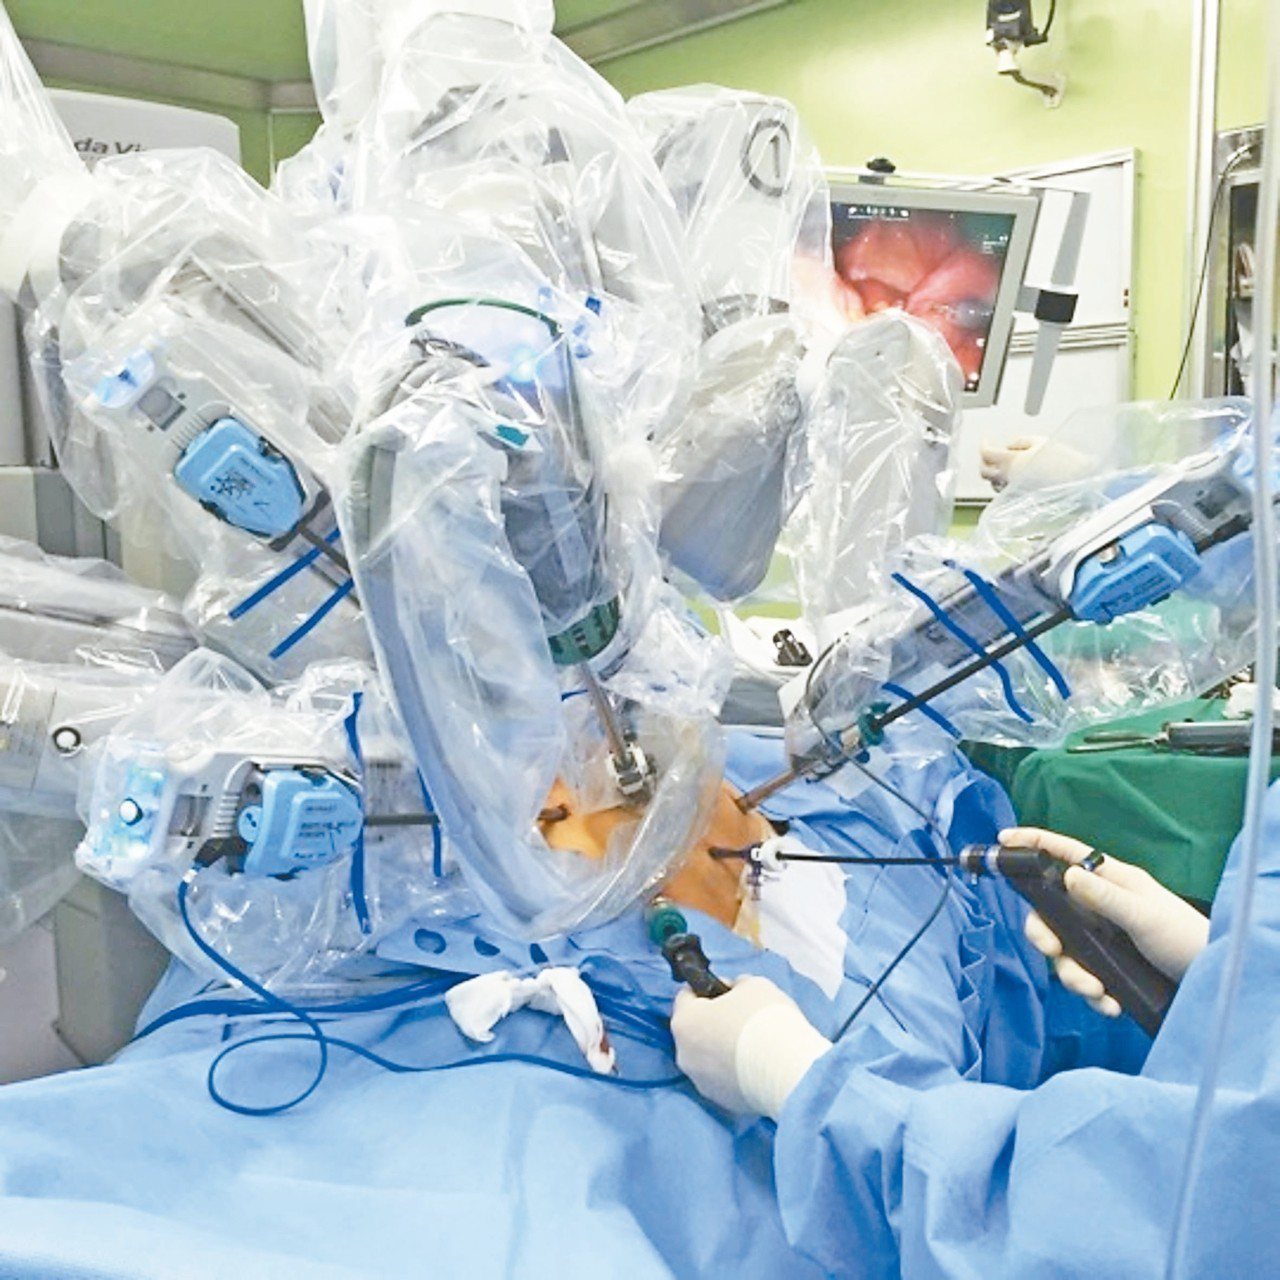 機器手臂包上無菌套，確保細菌不掉到病人身上，並在狹小骨盆空間內切除腫瘤。